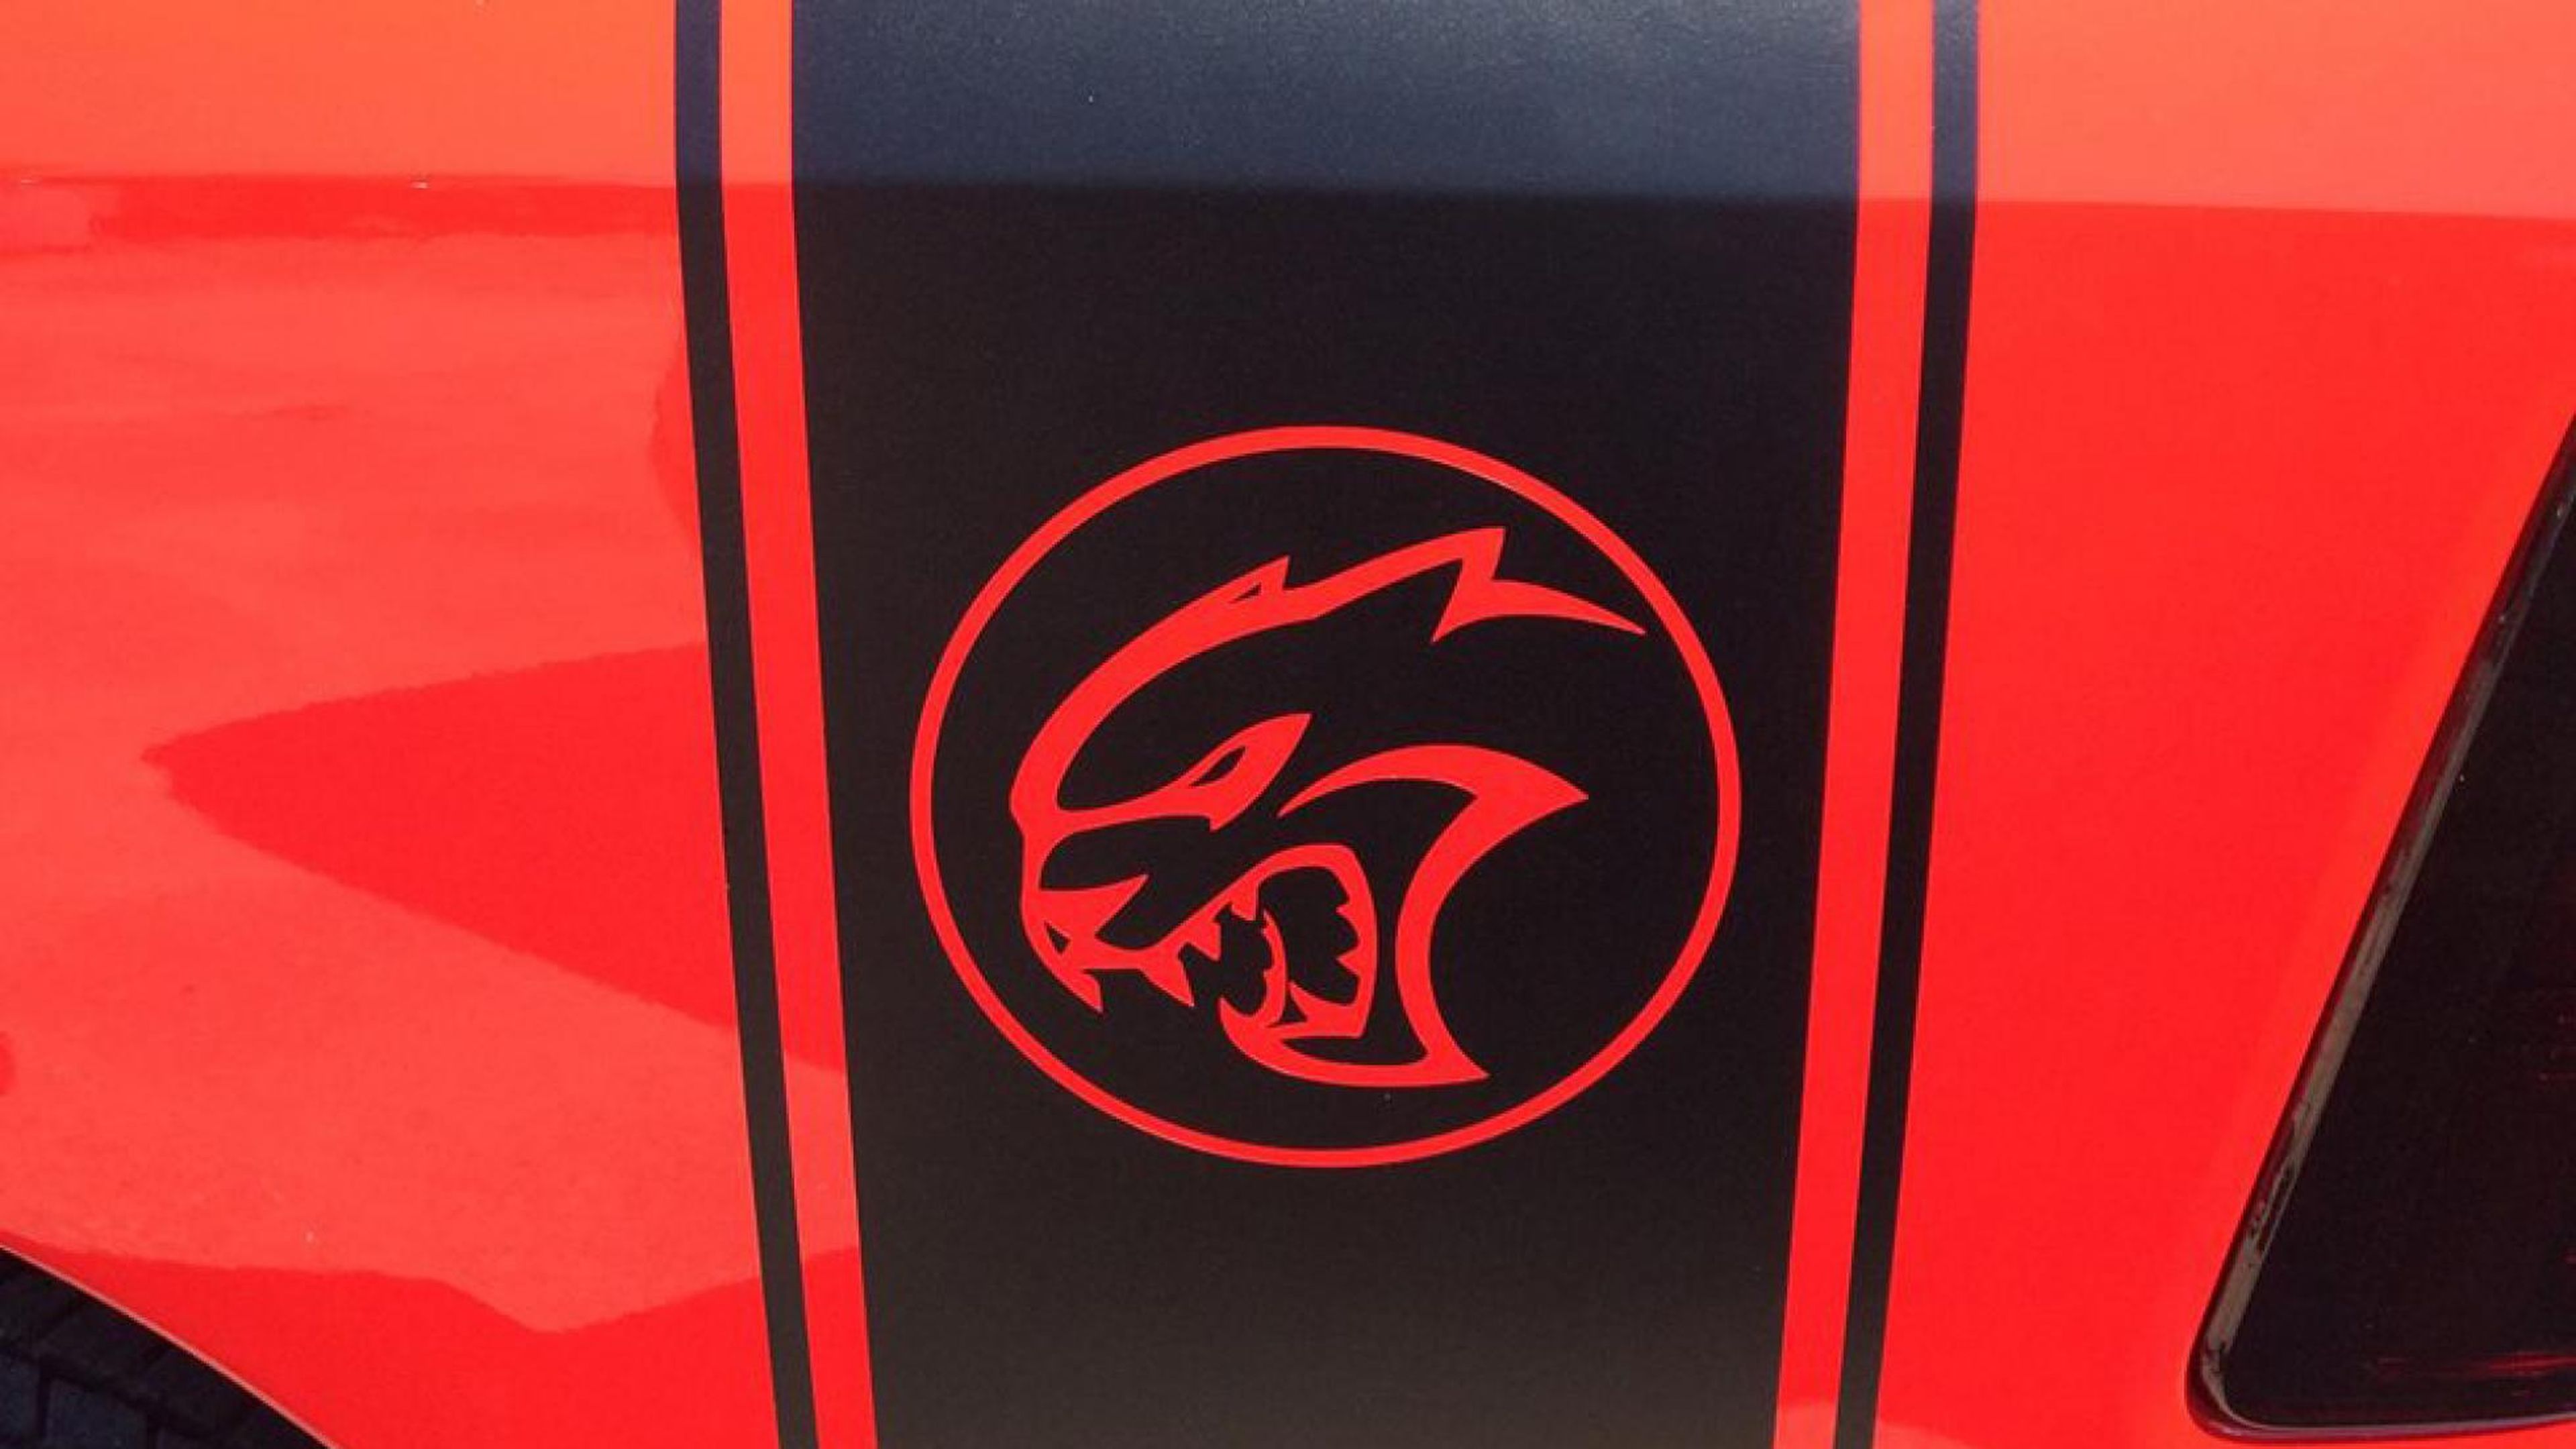 El logo Hellcat está acorde con las prestaciones del coche